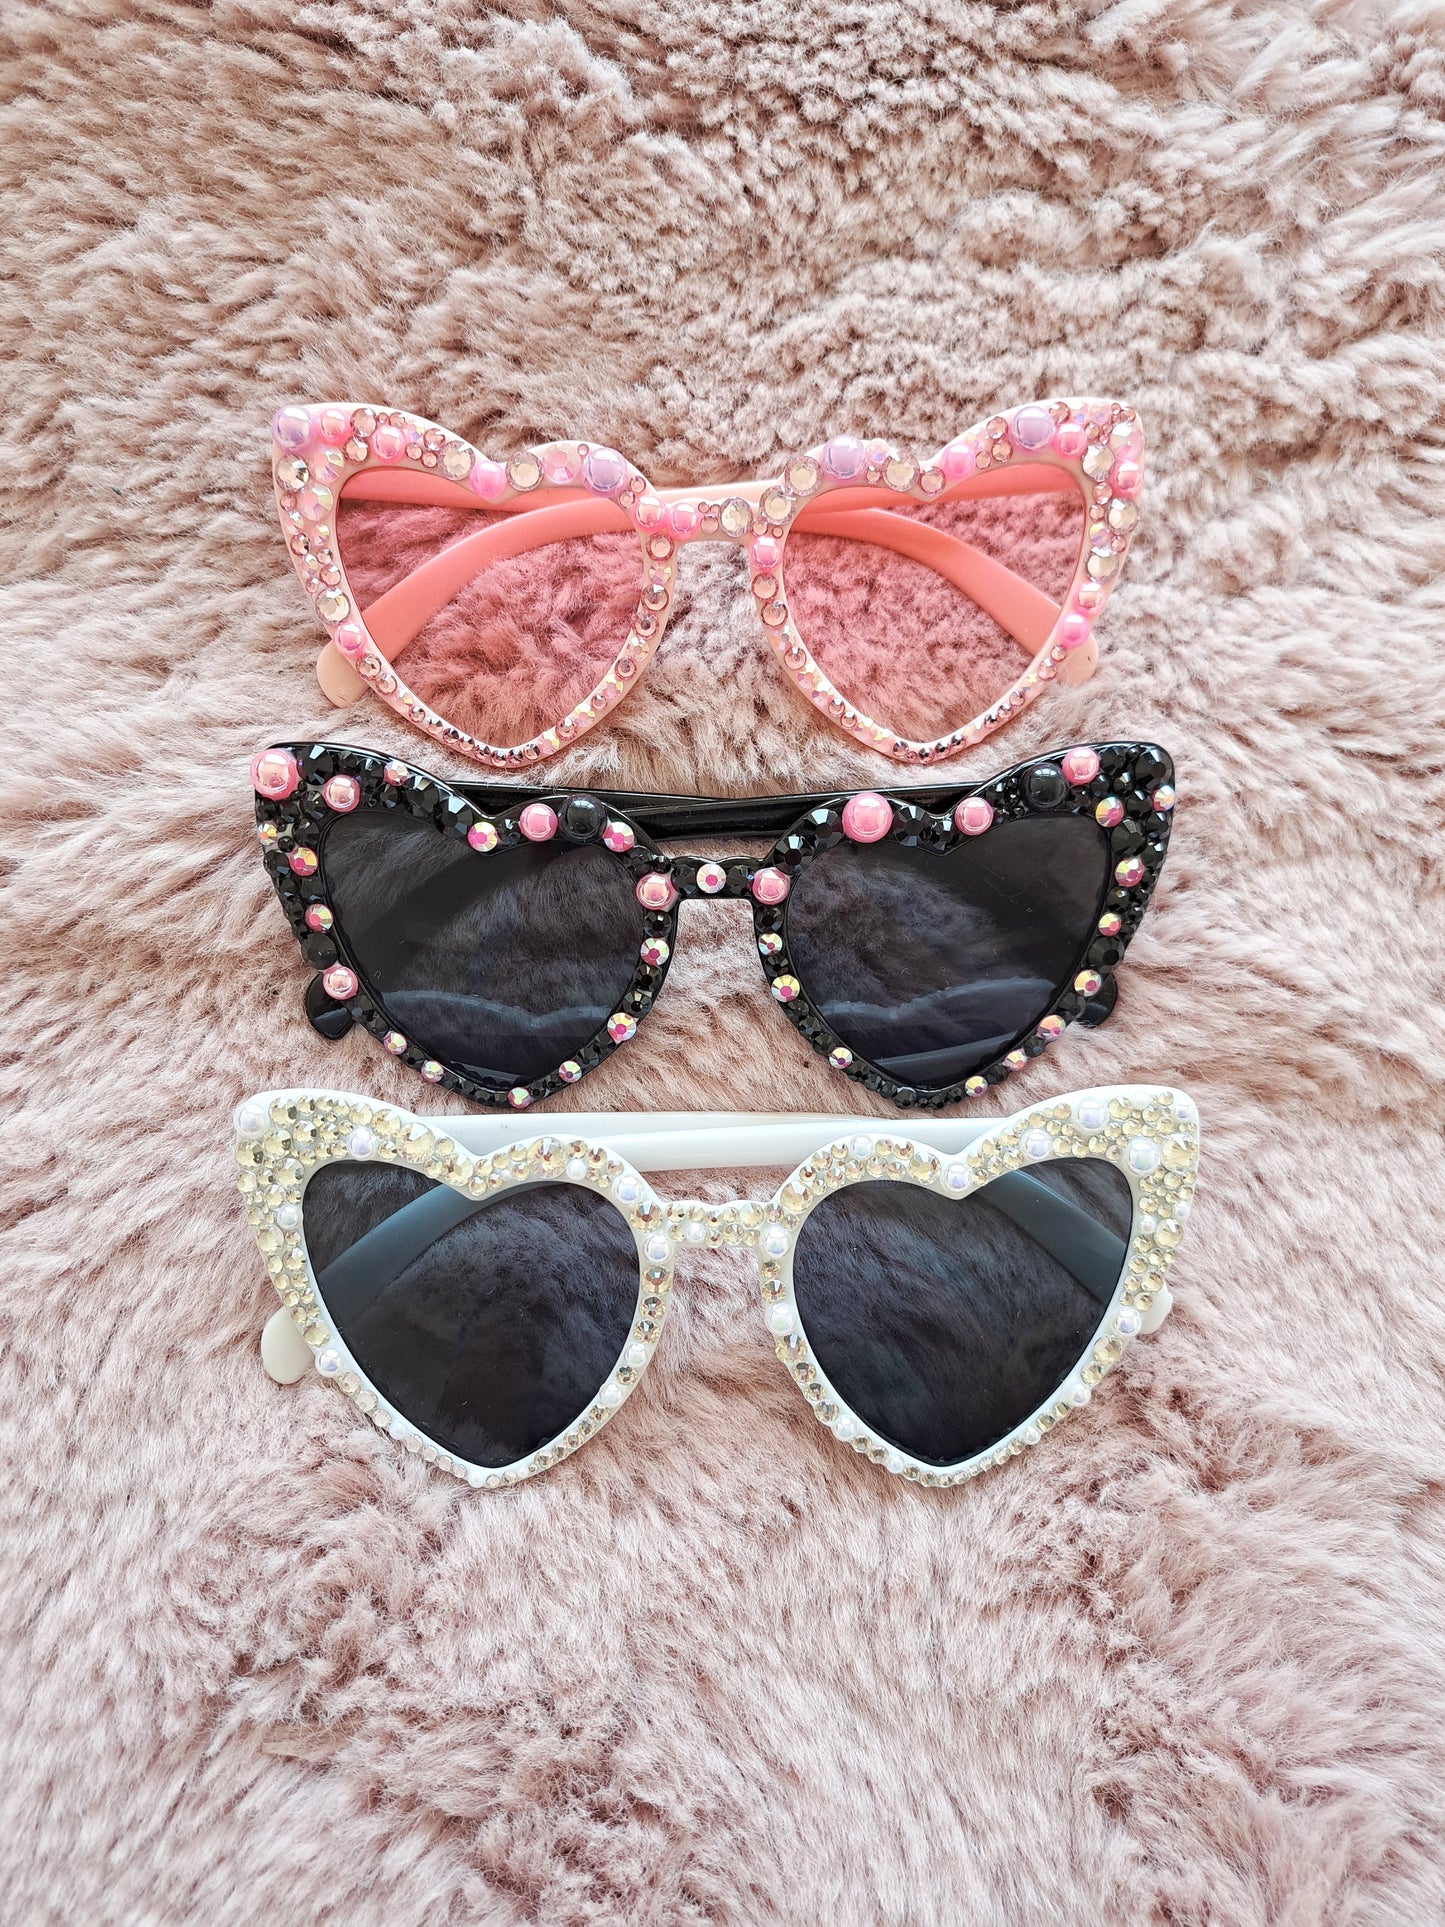 Bling heart sunglasses